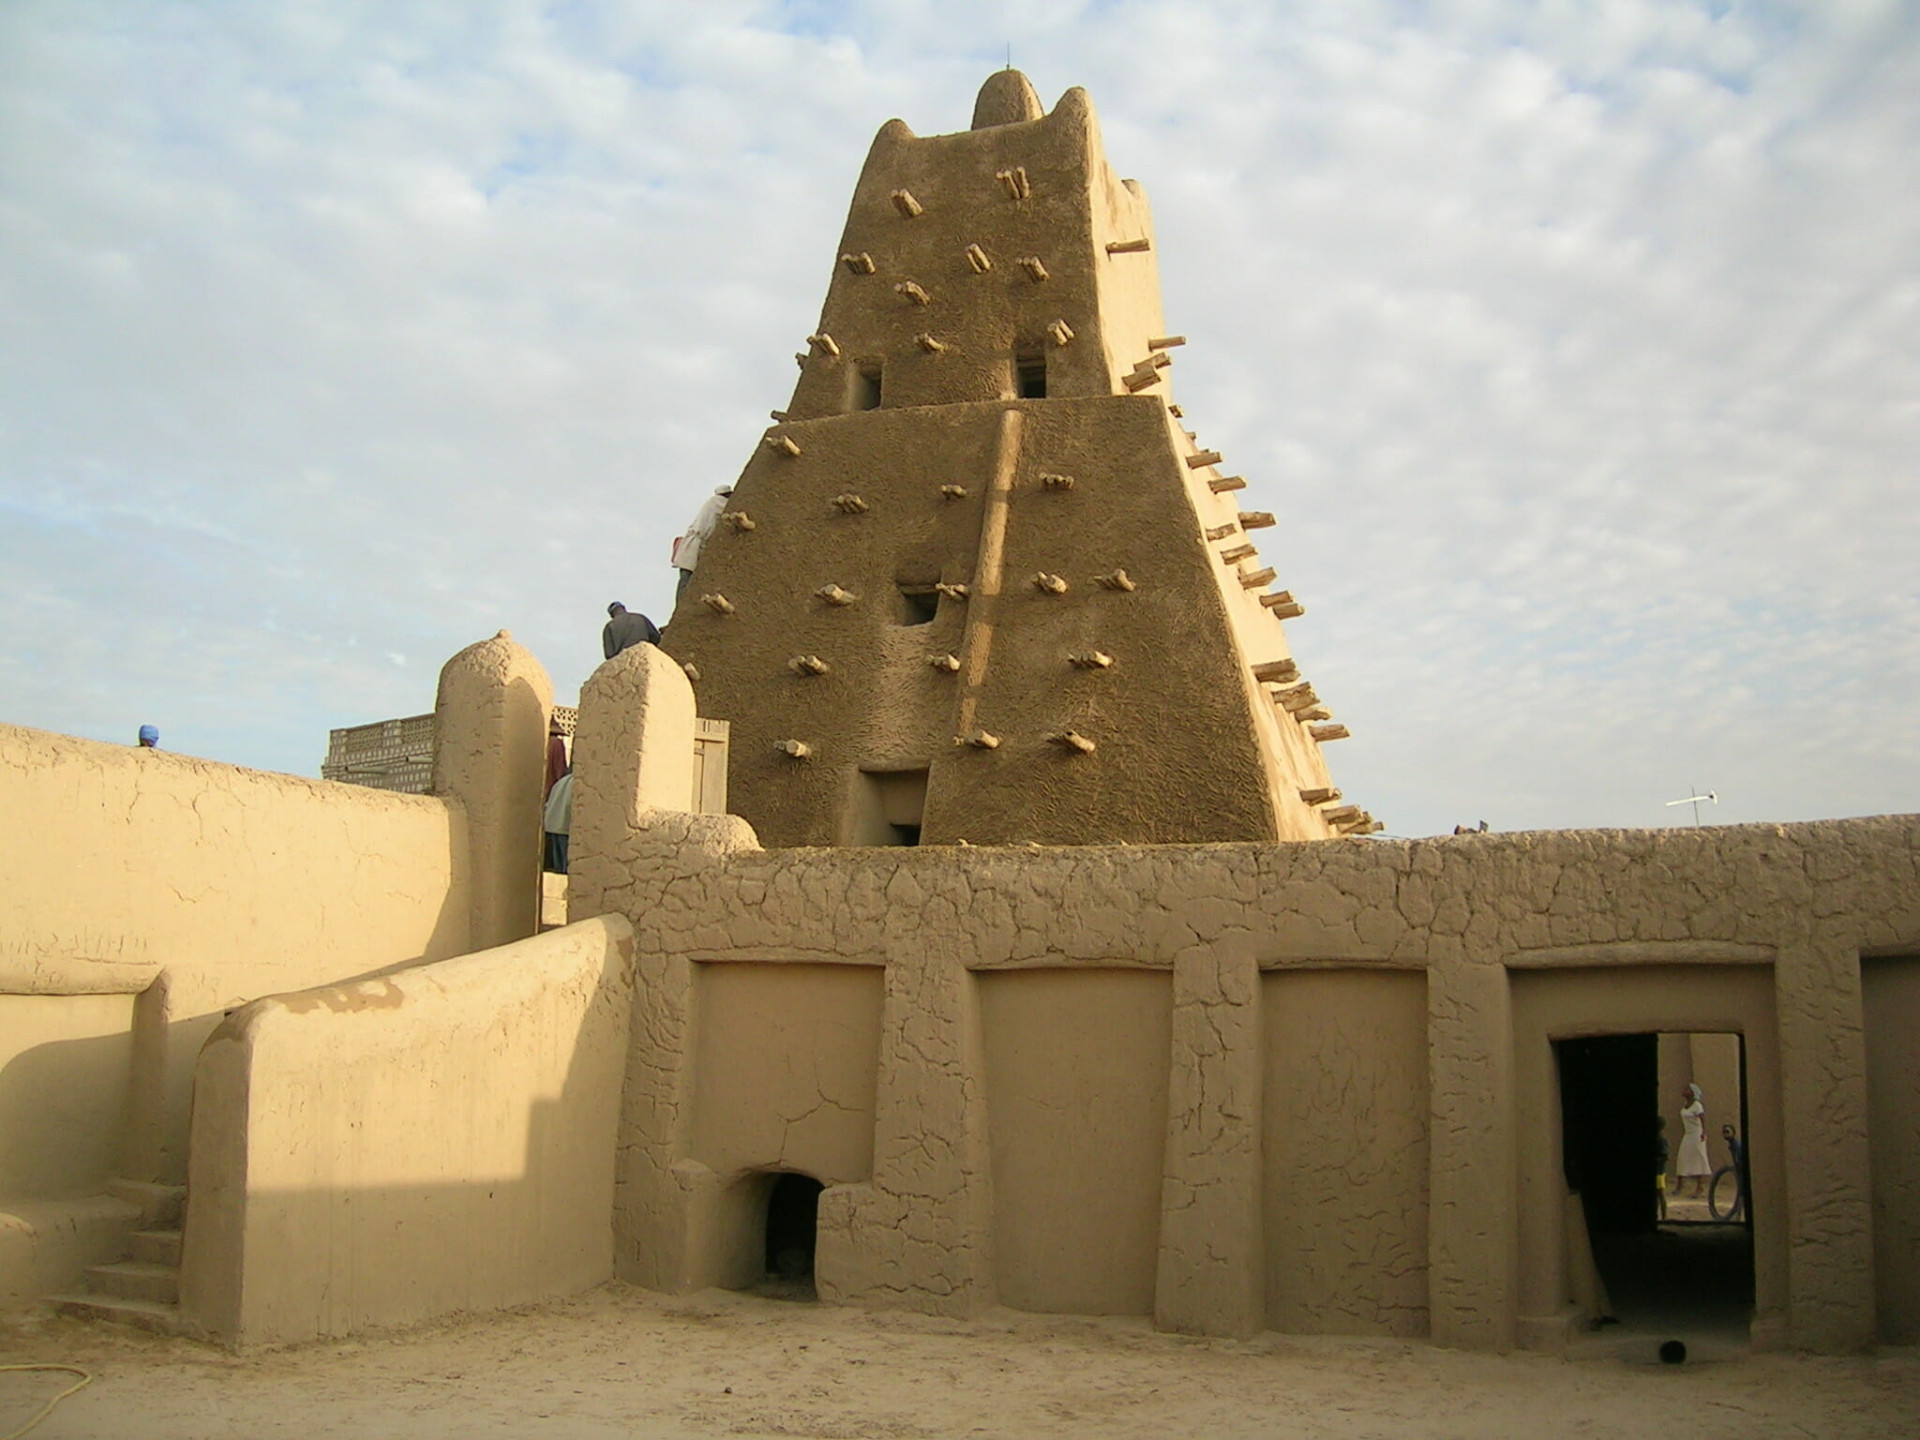 Timbuktu mausoleums